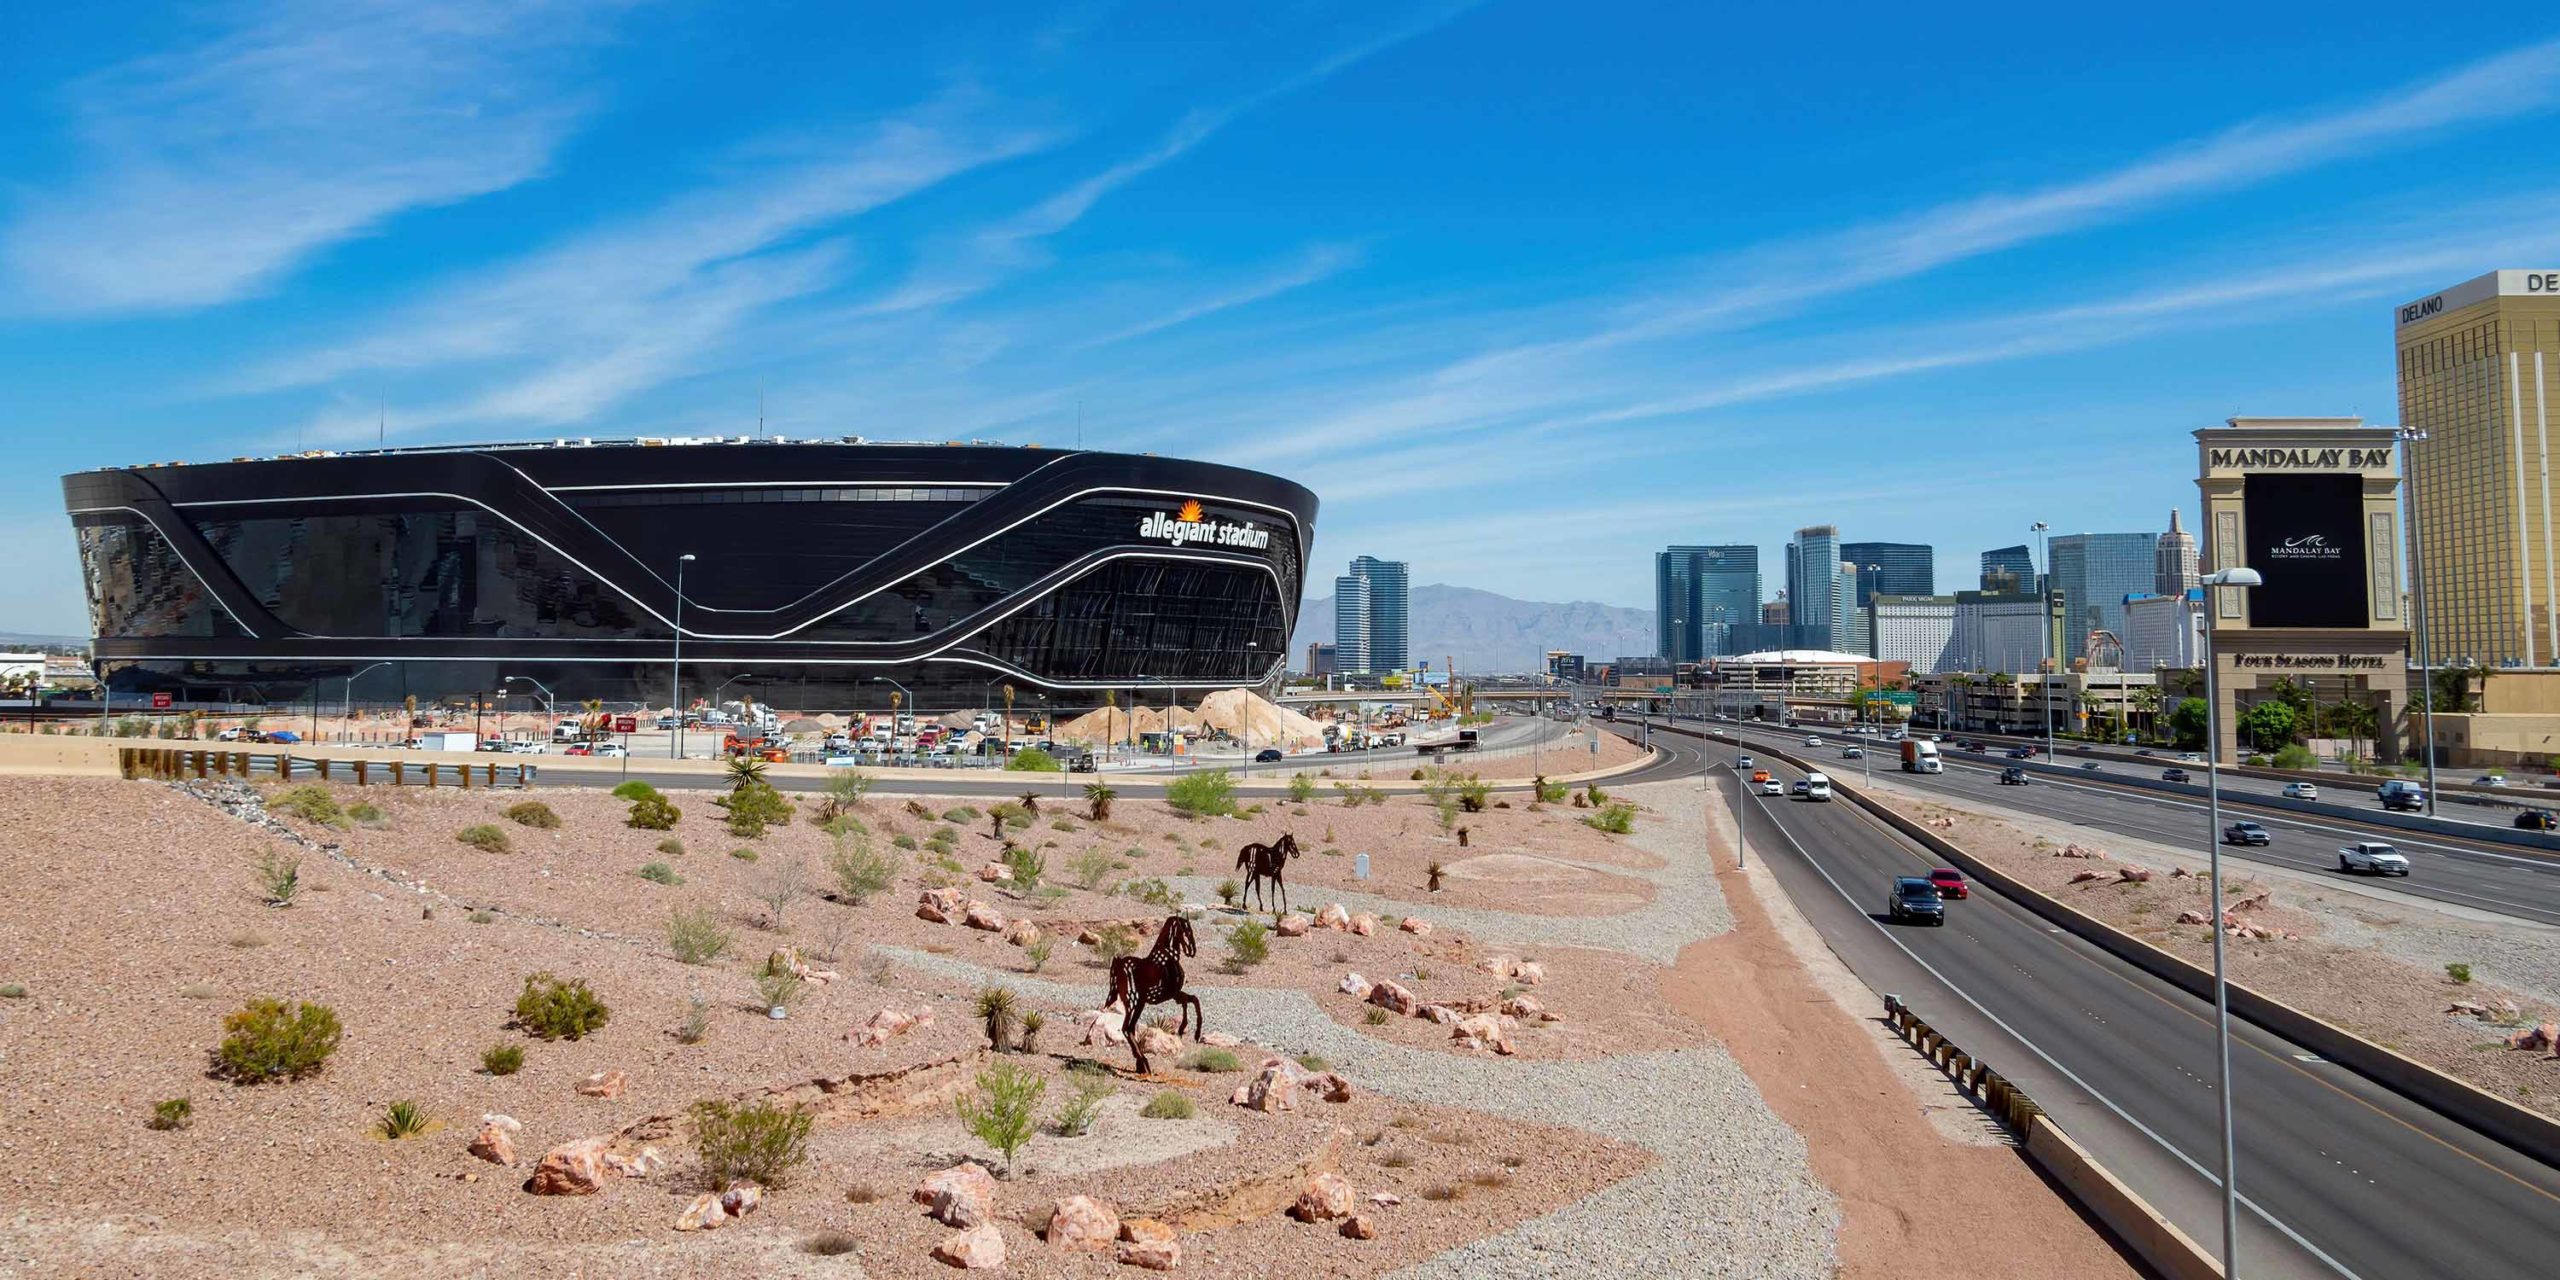 Las Vegas NFL Stadium header image #8